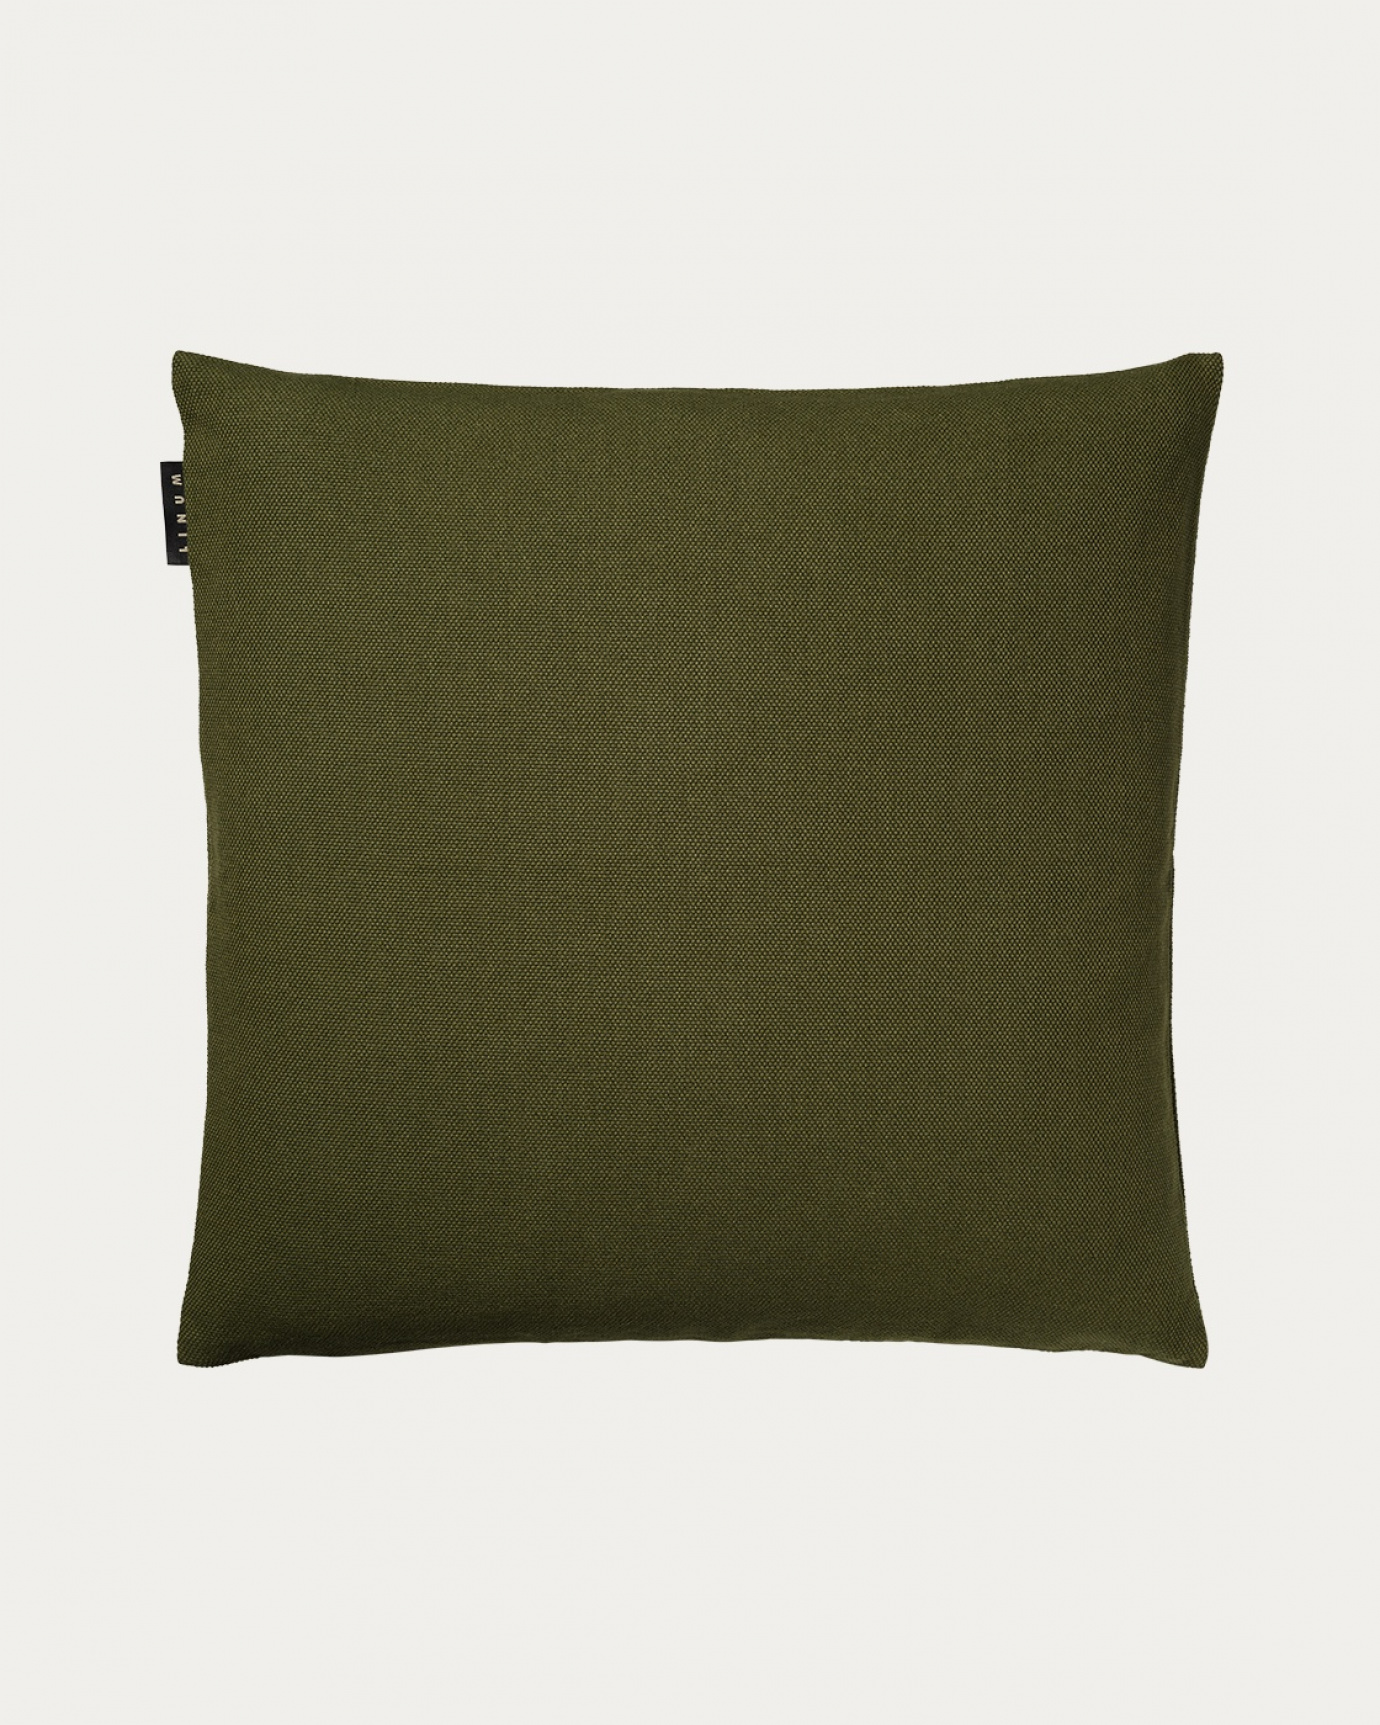 Image du produit housse de coussin PEPPER vert olive foncé en coton doux de LINUM DESIGN. Facile à laver et durable pendant des générations. Taille 50 x 50 cm.